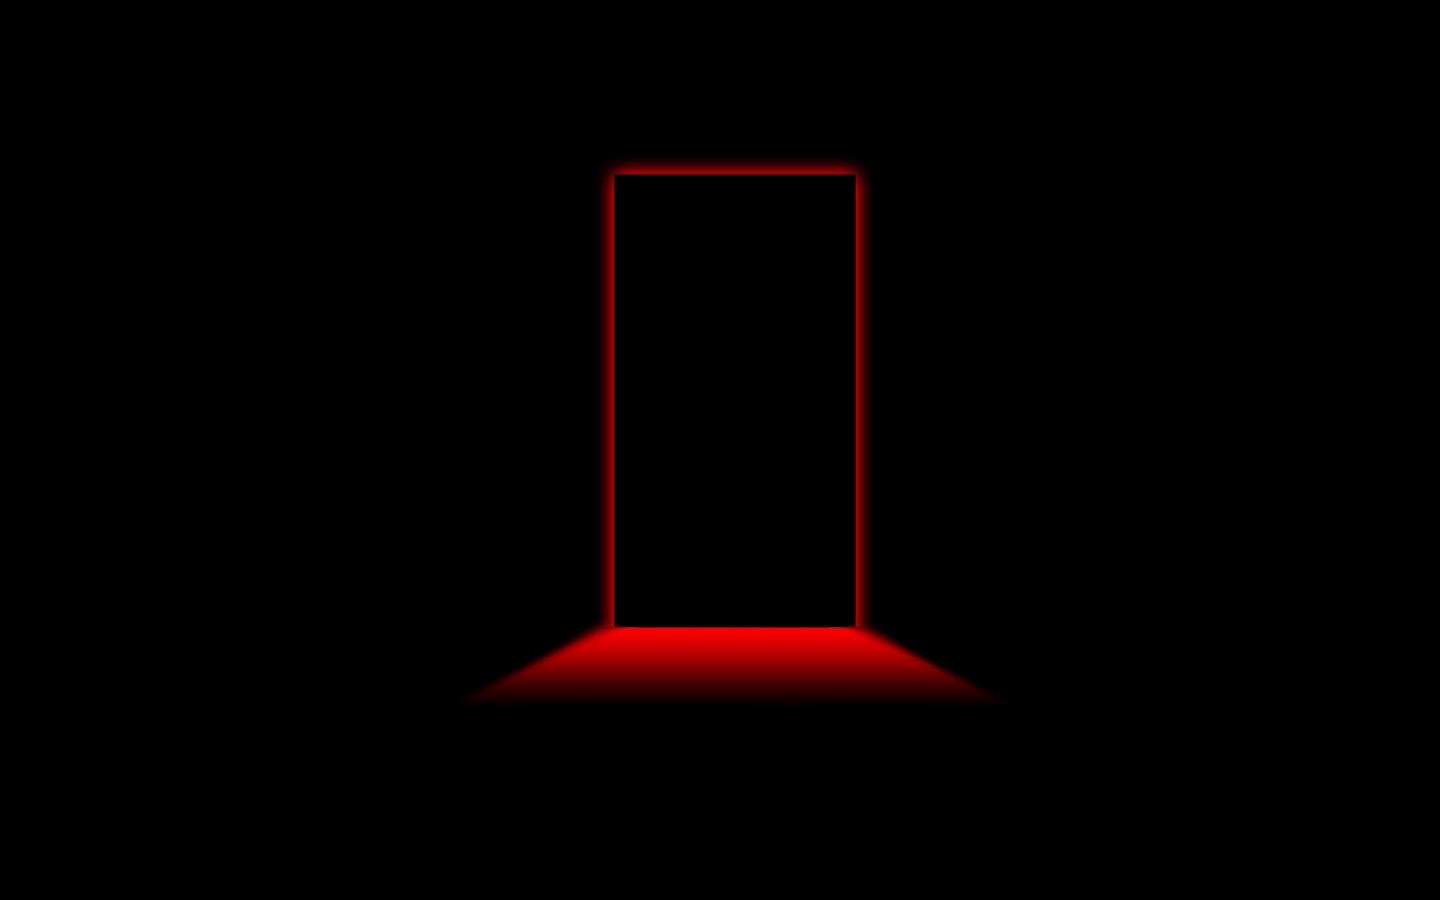 Door Red Light for 1440 x 900 widescreen resolution